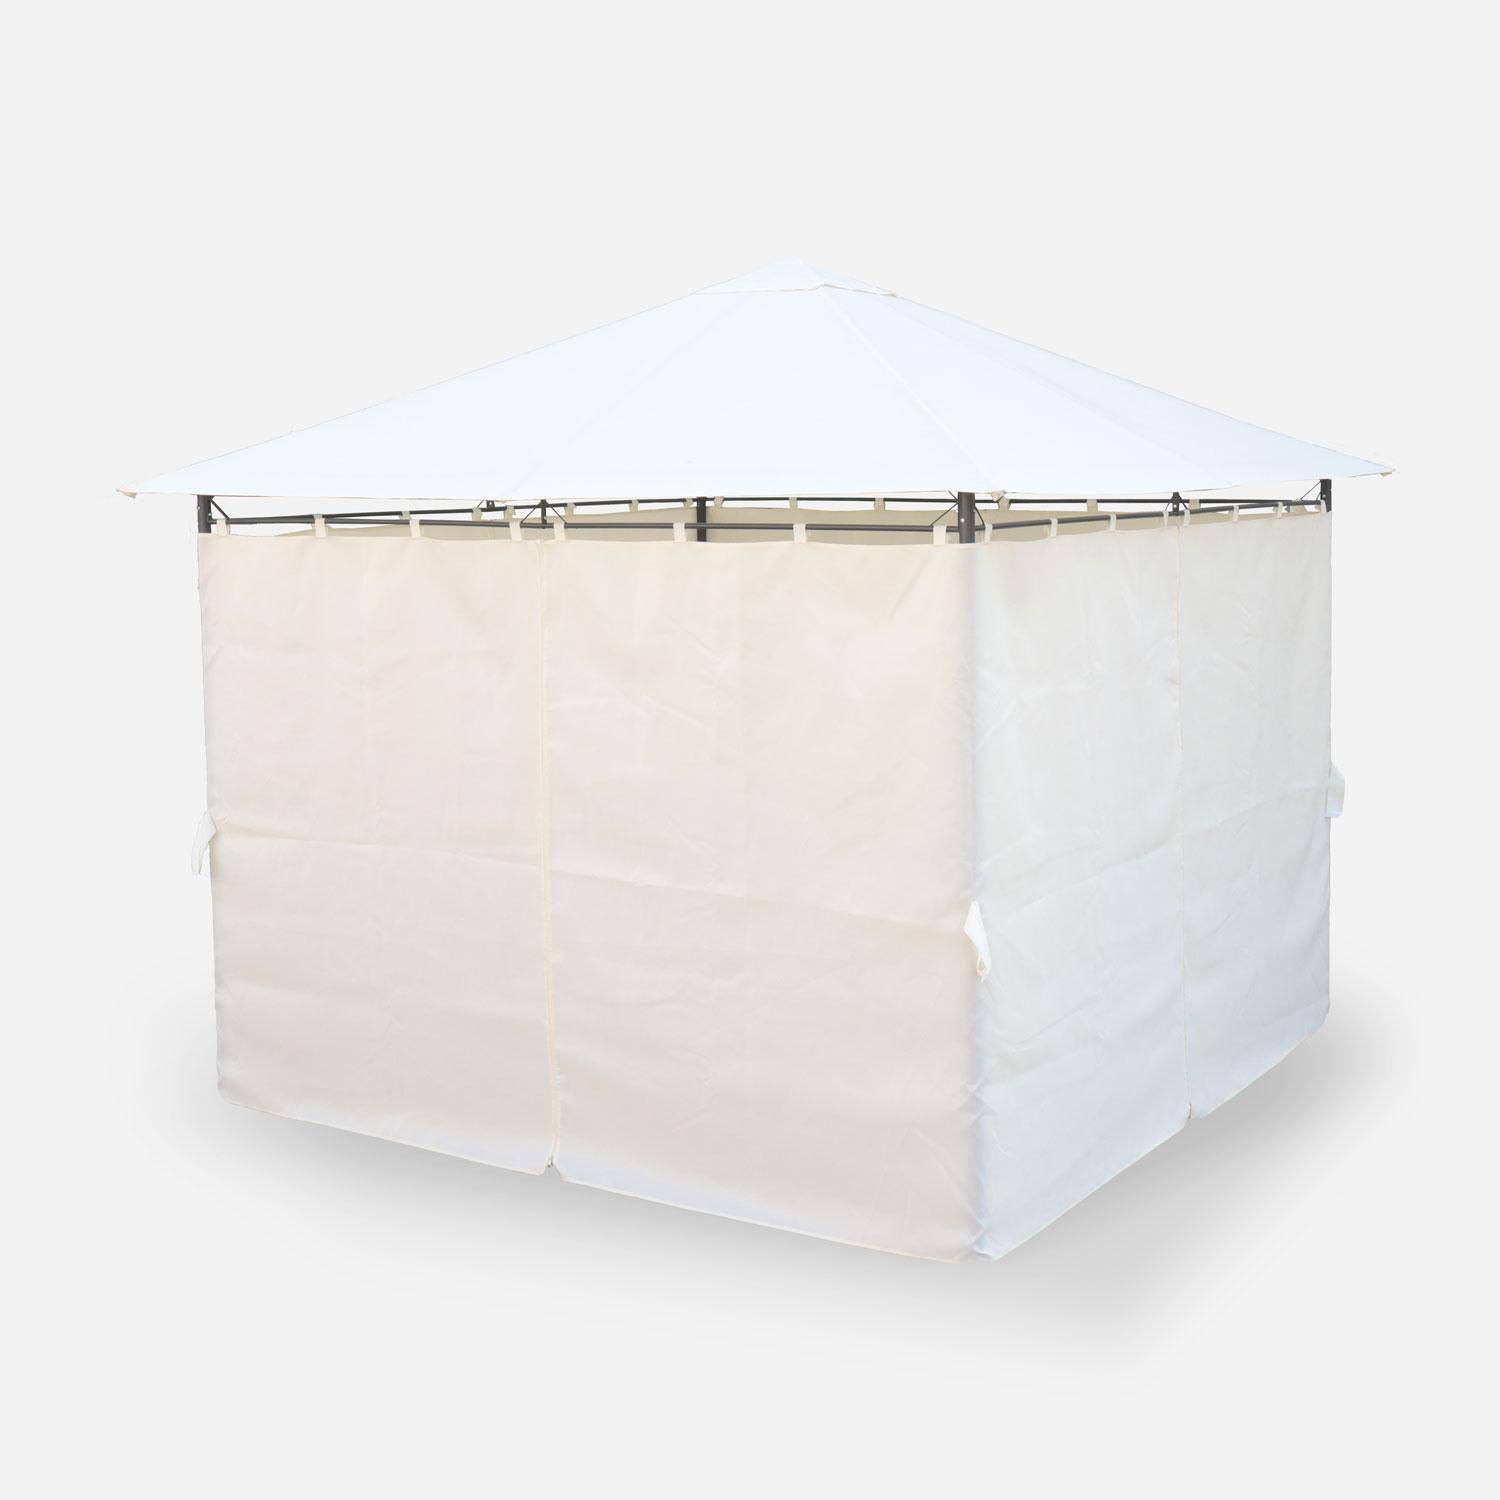 Pergolato 3x3 m - Elusa - Pergola con tende, tenda da giardino, barnum, tensostruttura, ricevimento Photo3